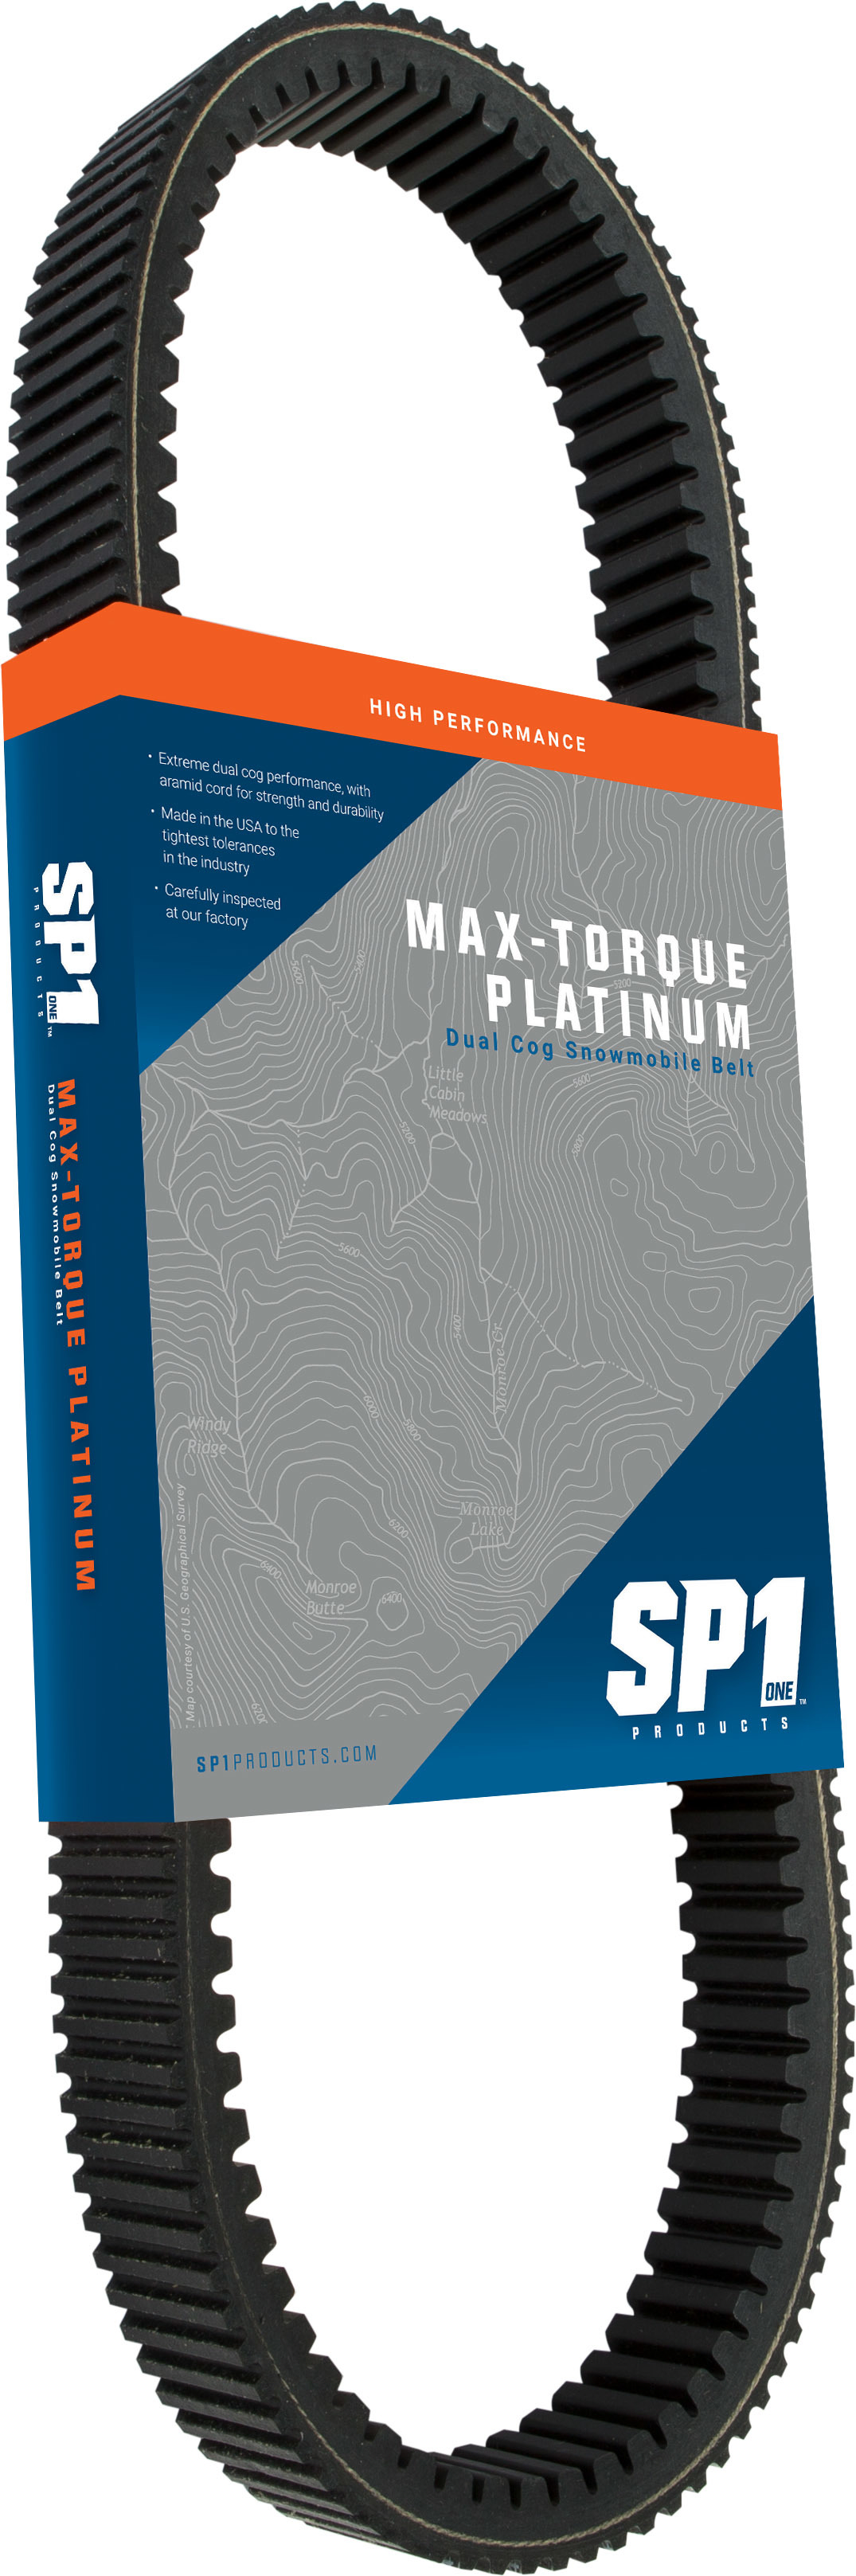 Sp1 - Max-torque Platinum Belt 44 1/16" X 1 7/16" - 47-6061